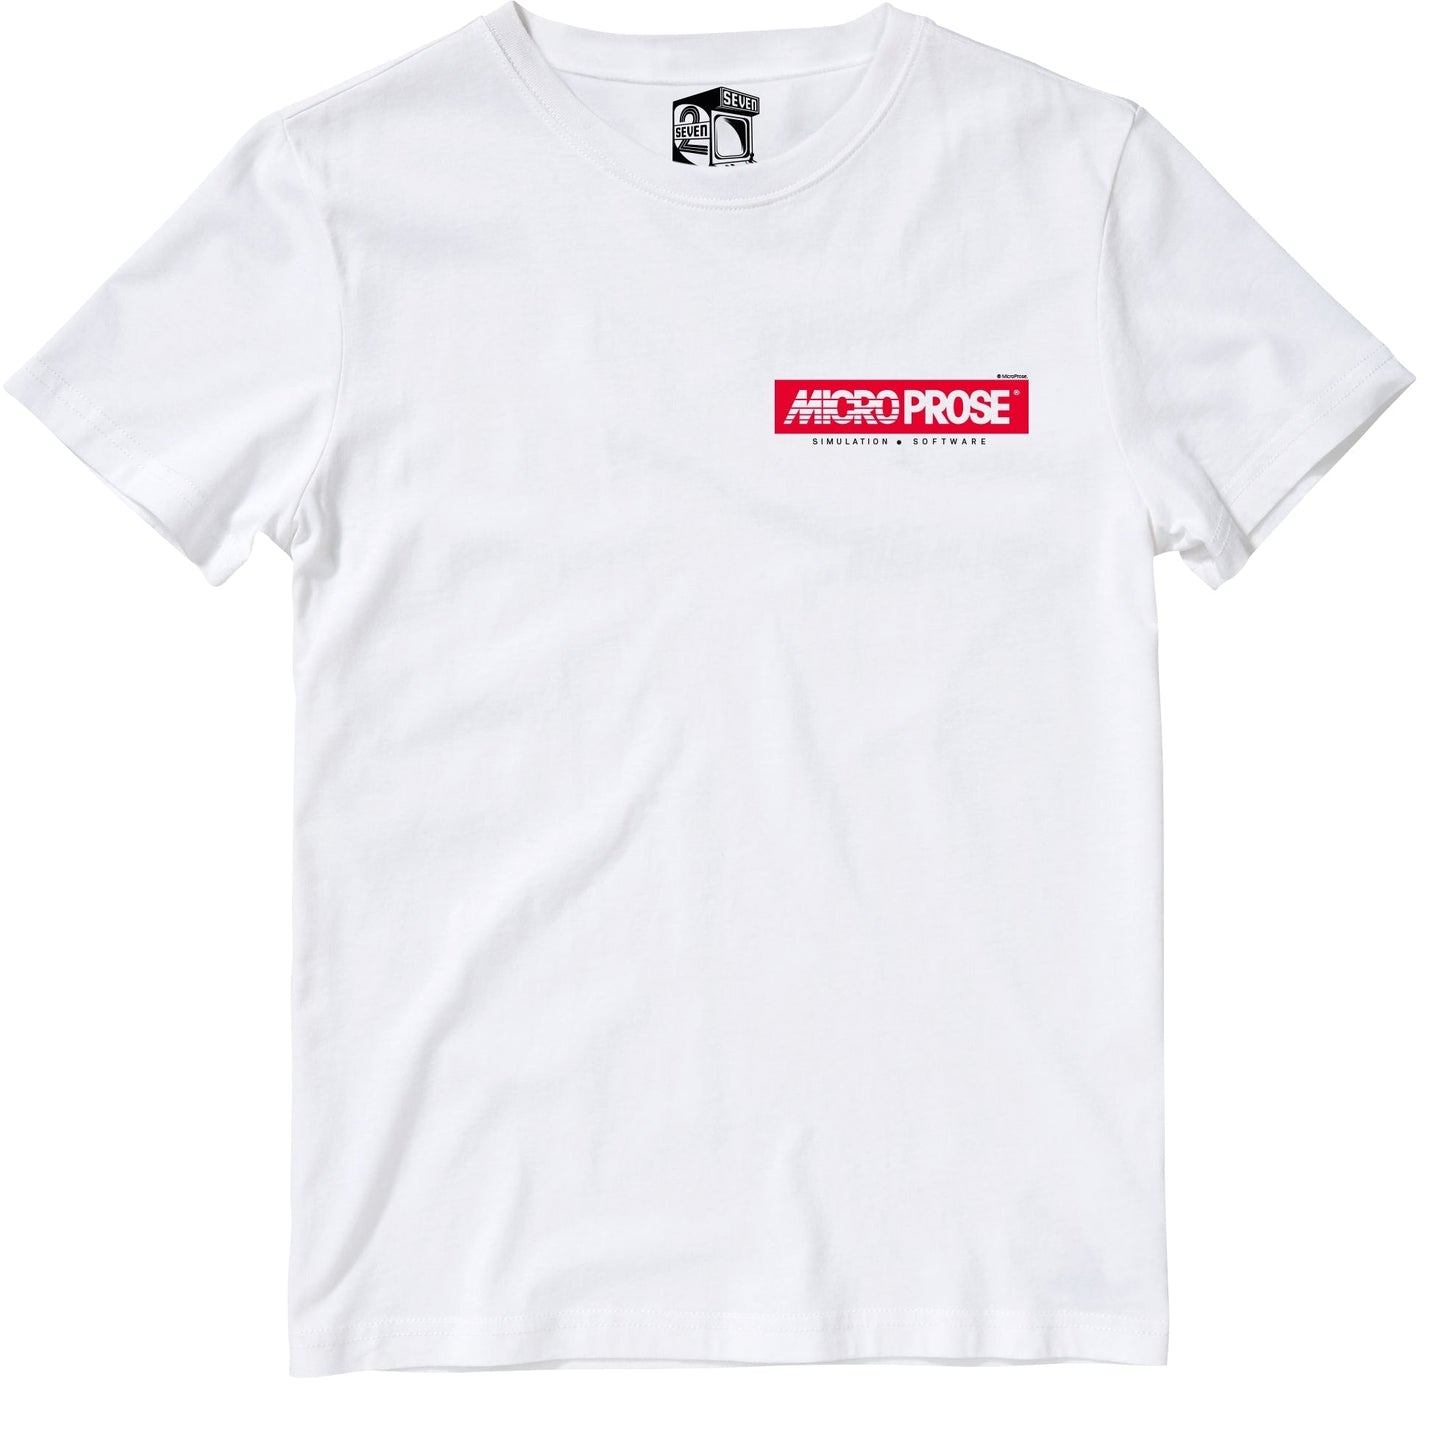 Microprose Pocket Logo Retro Gaming Kids T-Shirt Kids T-Shirt Seven Squared 3-4 Years White 